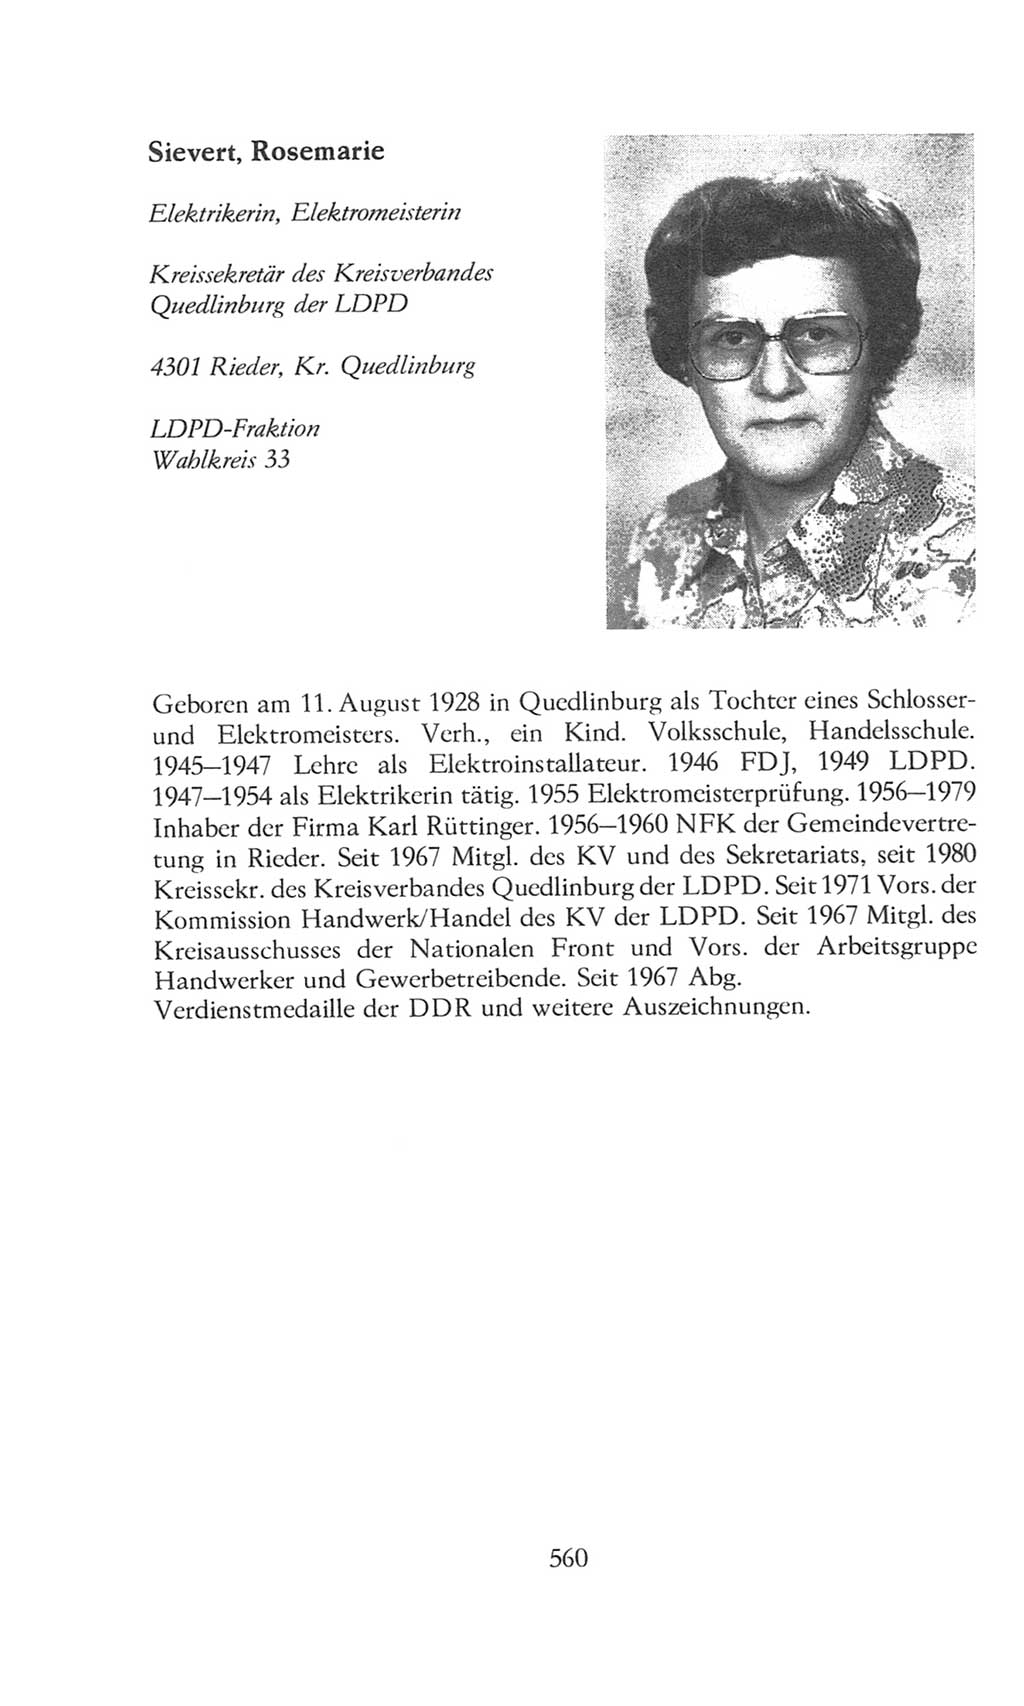 Volkskammer (VK) der Deutschen Demokratischen Republik (DDR), 8. Wahlperiode 1981-1986, Seite 560 (VK. DDR 8. WP. 1981-1986, S. 560)